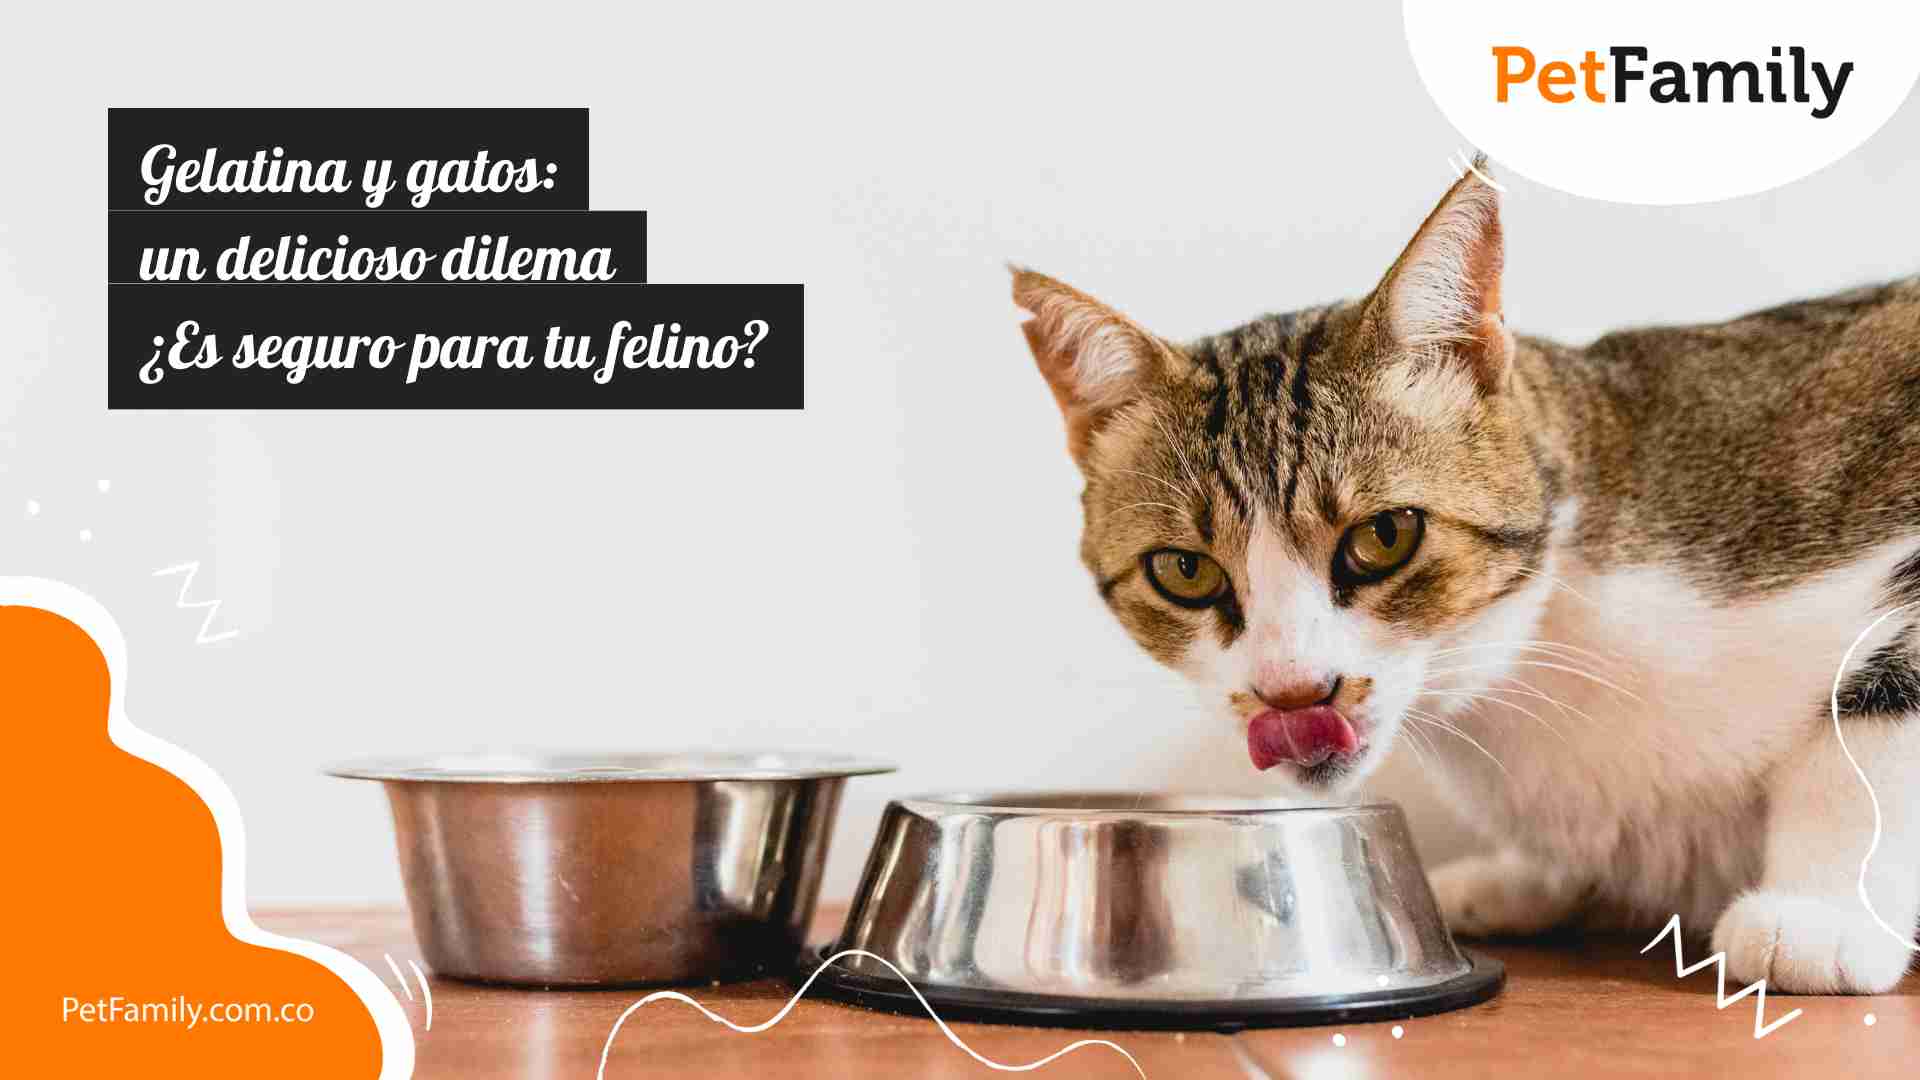 Gelatina y gatos: un delicioso dilema ¿Es seguro para tu felino? 